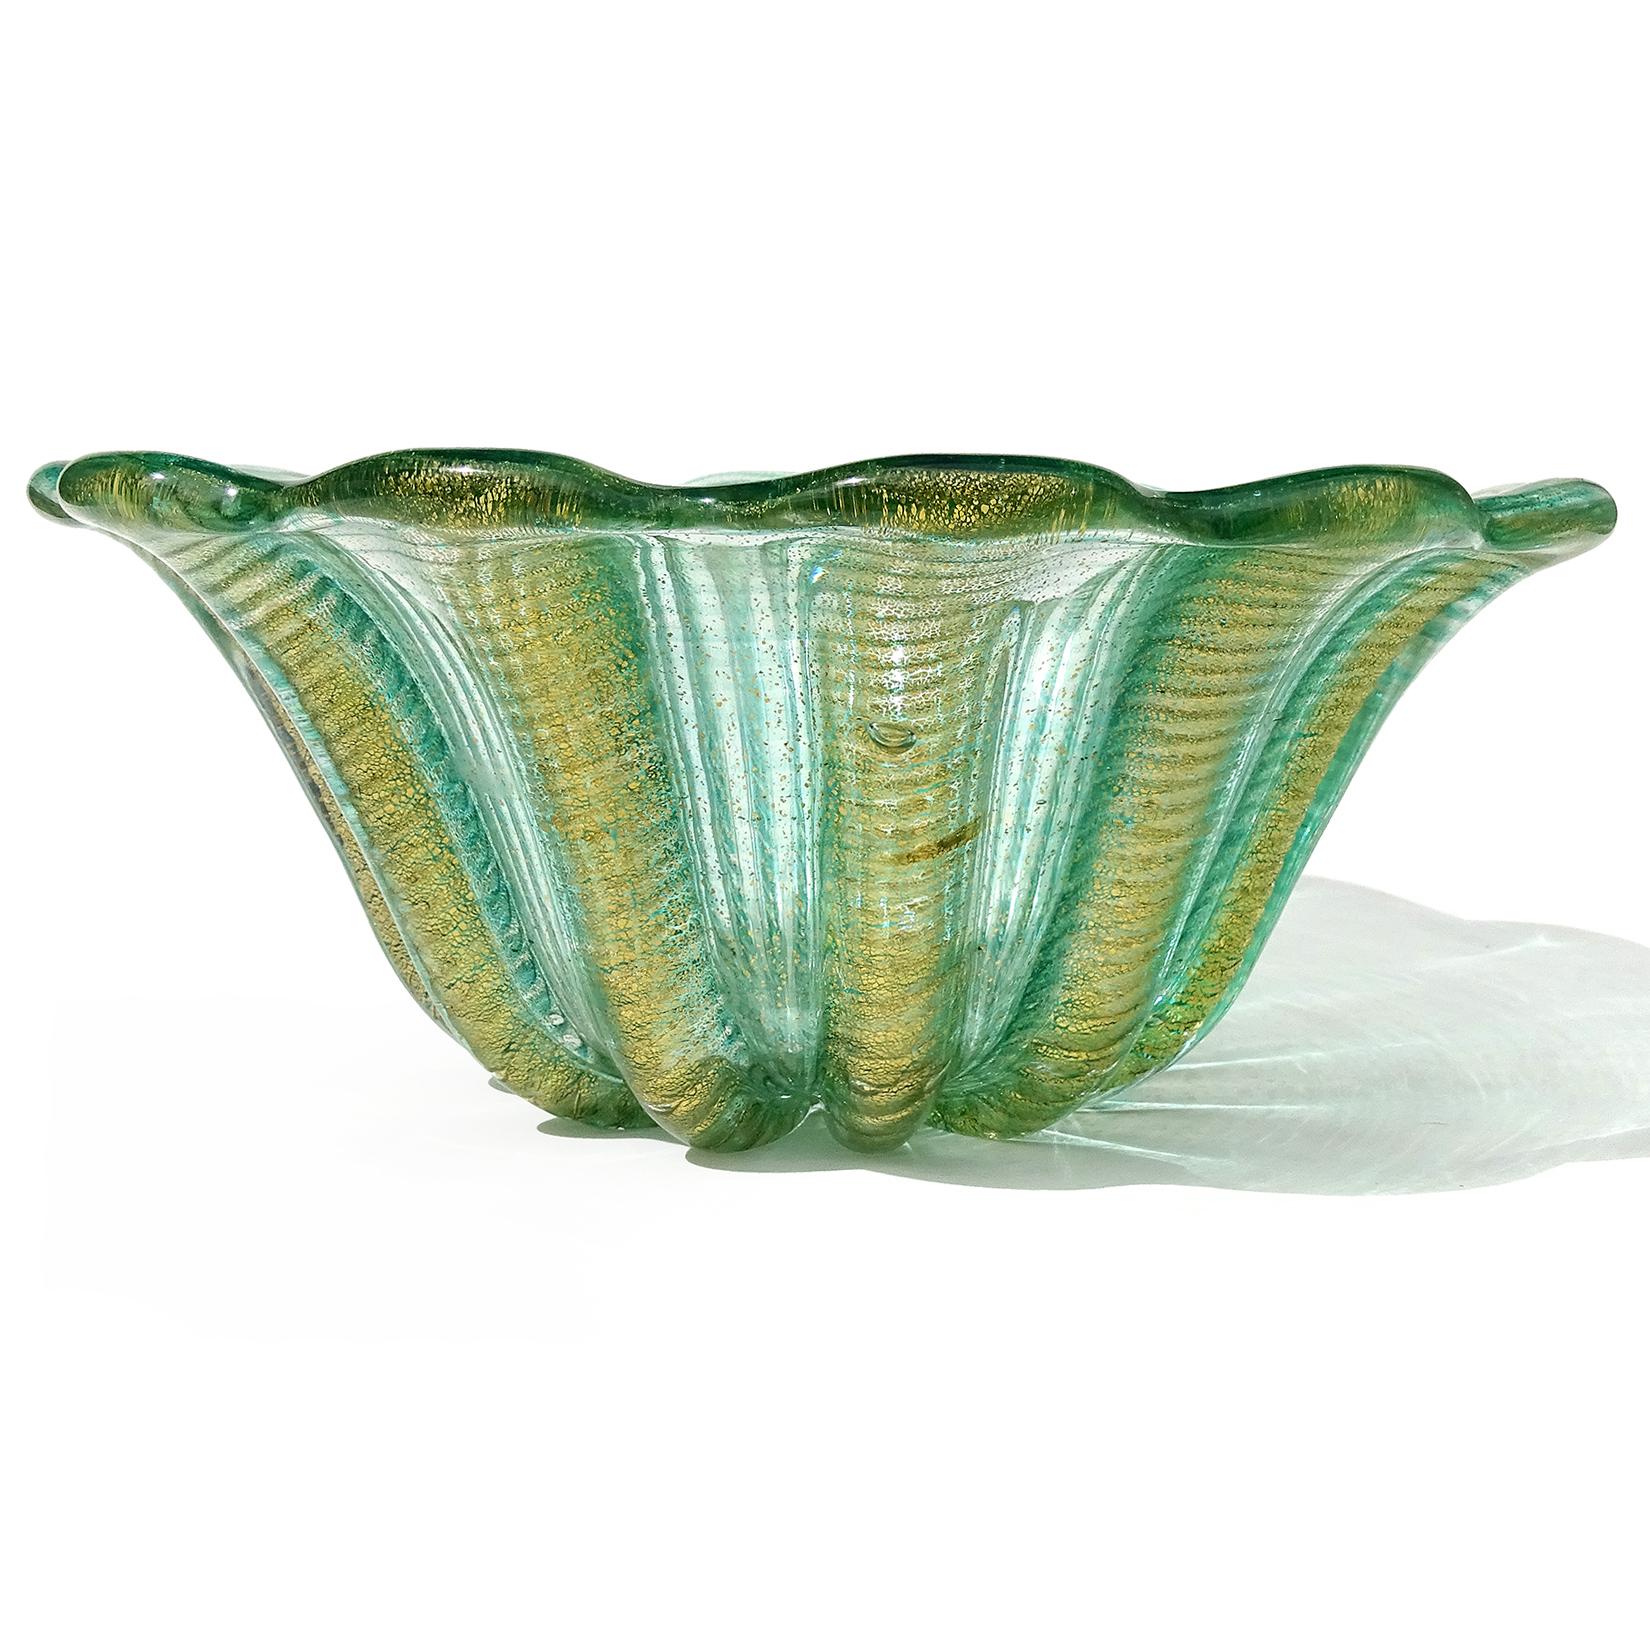 Beautiful vintage Murano hand blown green and gold flecks Italian art glass centerpiece bowl. Documented to designer Ercole Barovier, for Barovier e Toso. Created in the Cordonato D' Oro and Zebrati designs, circa 1950s. The bowl has a scalloped rim